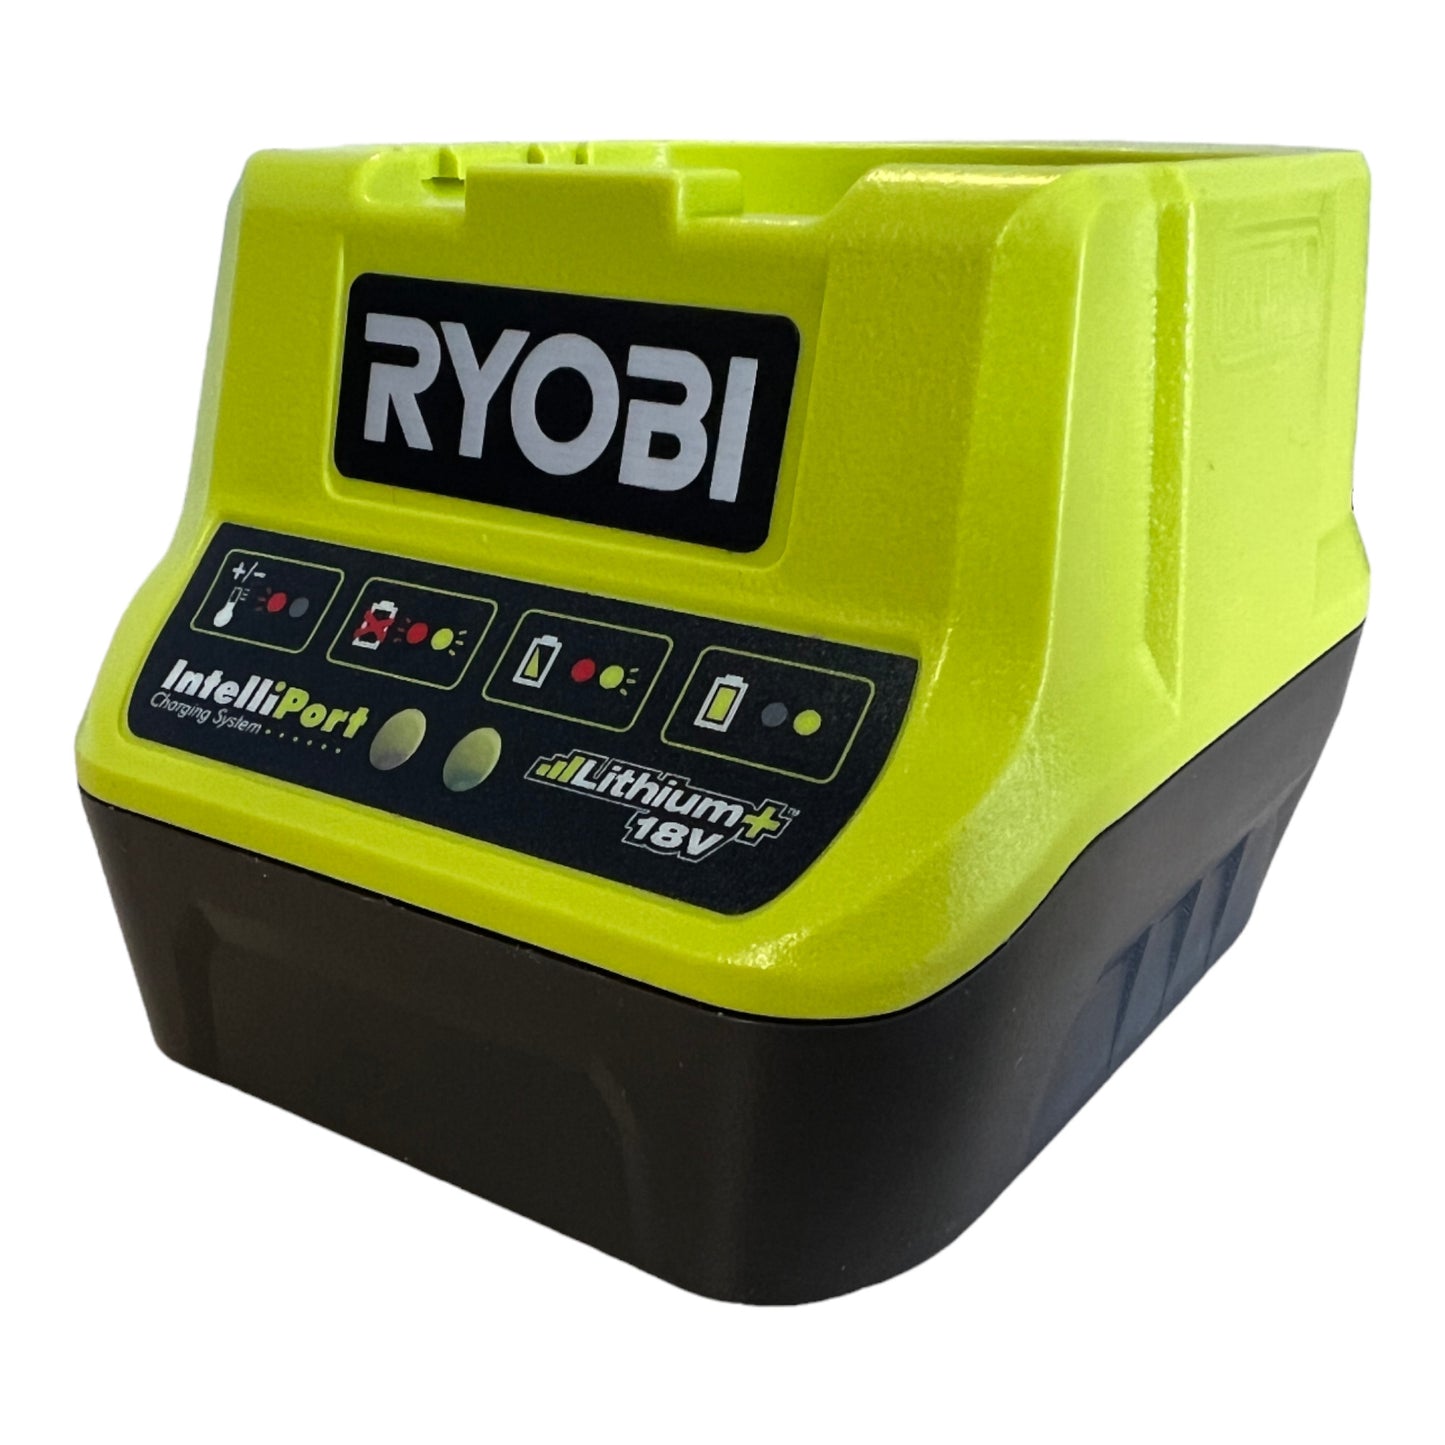 RYOBI RC18120-150X Akku Starter Set mit 1x RB18L50 Akku 18 V 5,0 Ah und RC18120 Akku Schnell Ladegerät